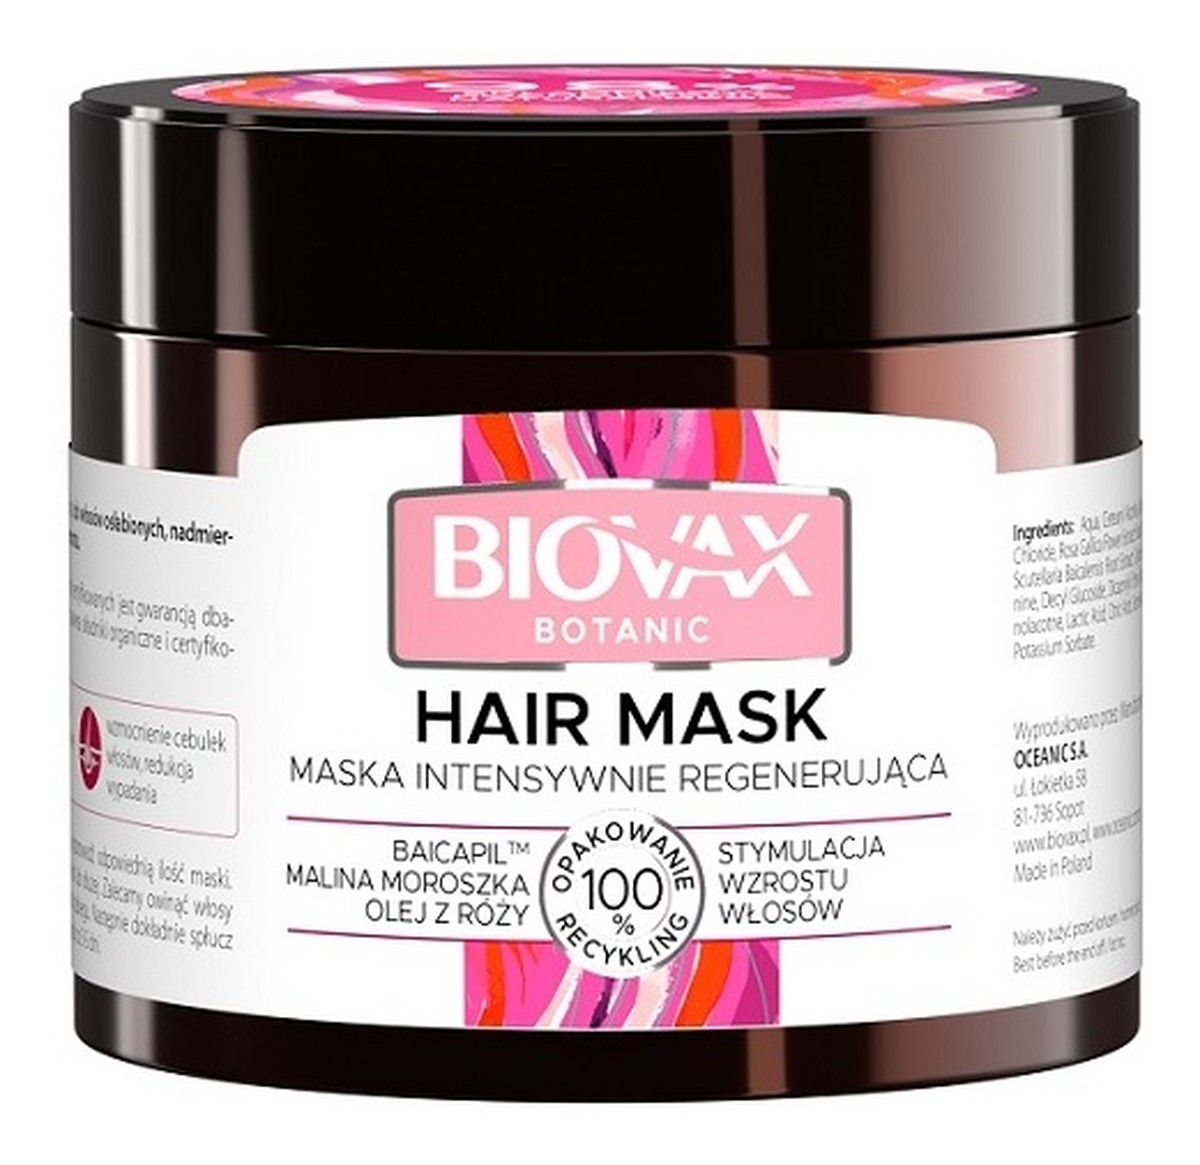 Maska do włosów intensywnie regenerująca - Malina Moroszka, Baicapil, Olej z Róży